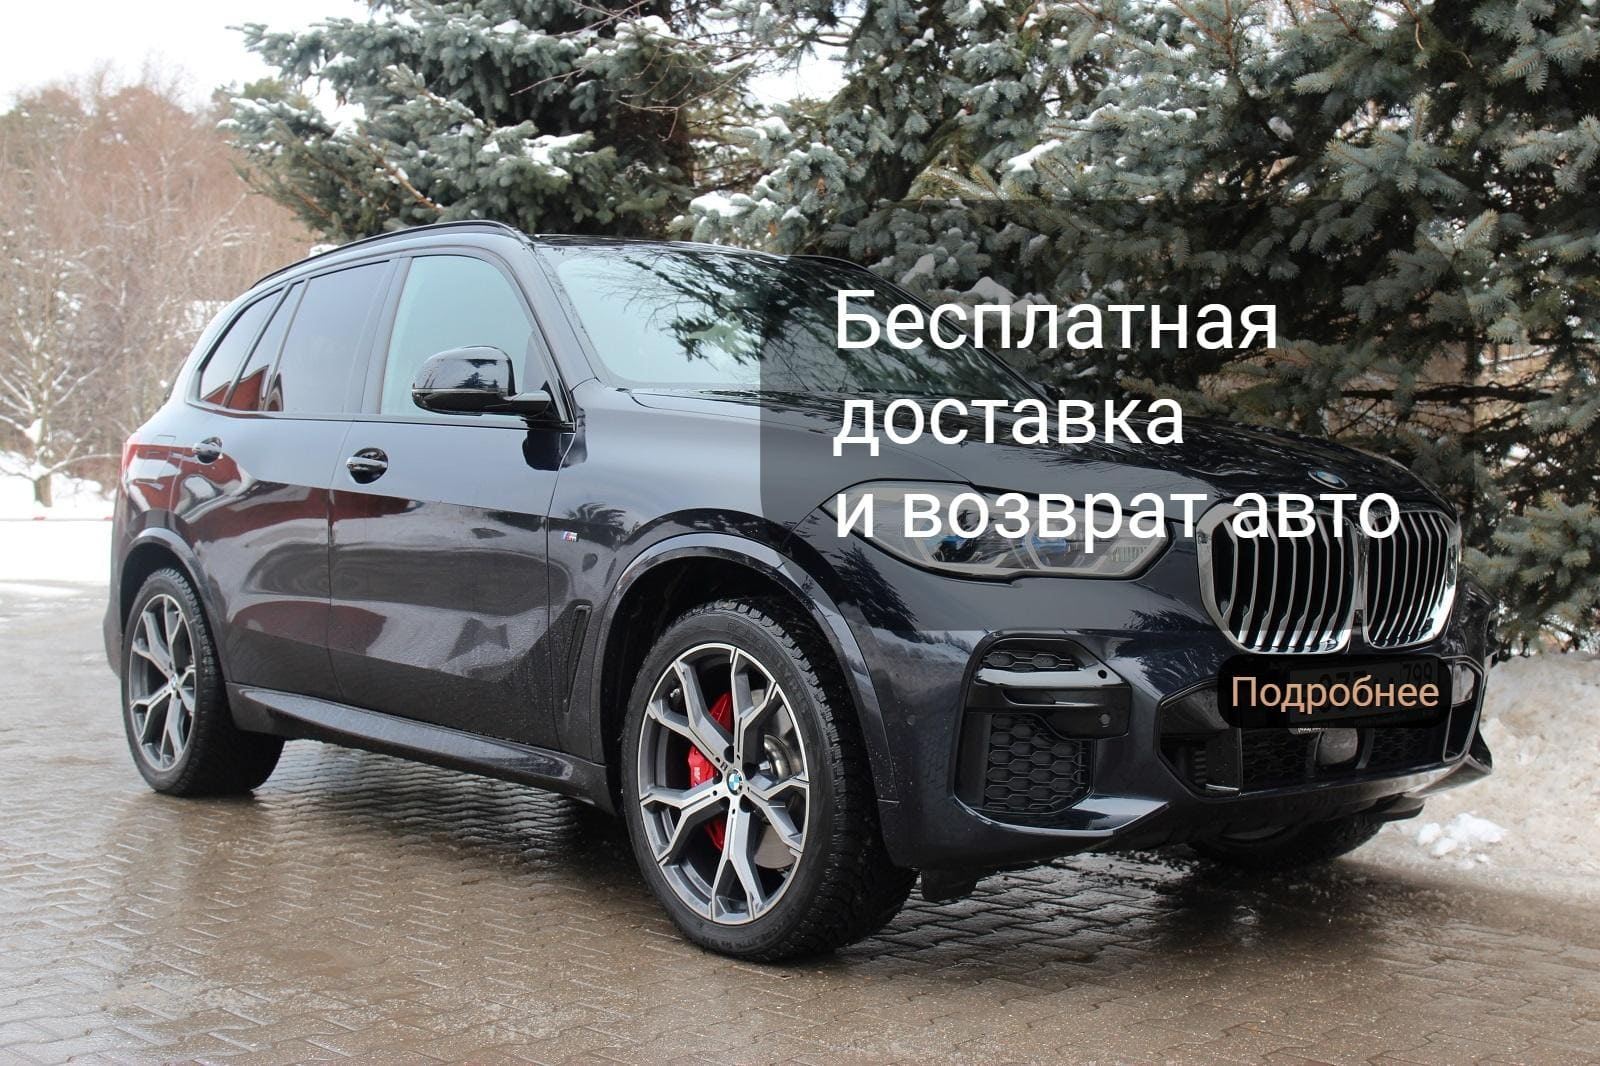 Акция на аренду авто в Москве. Бесплатная доставка и возврат машины